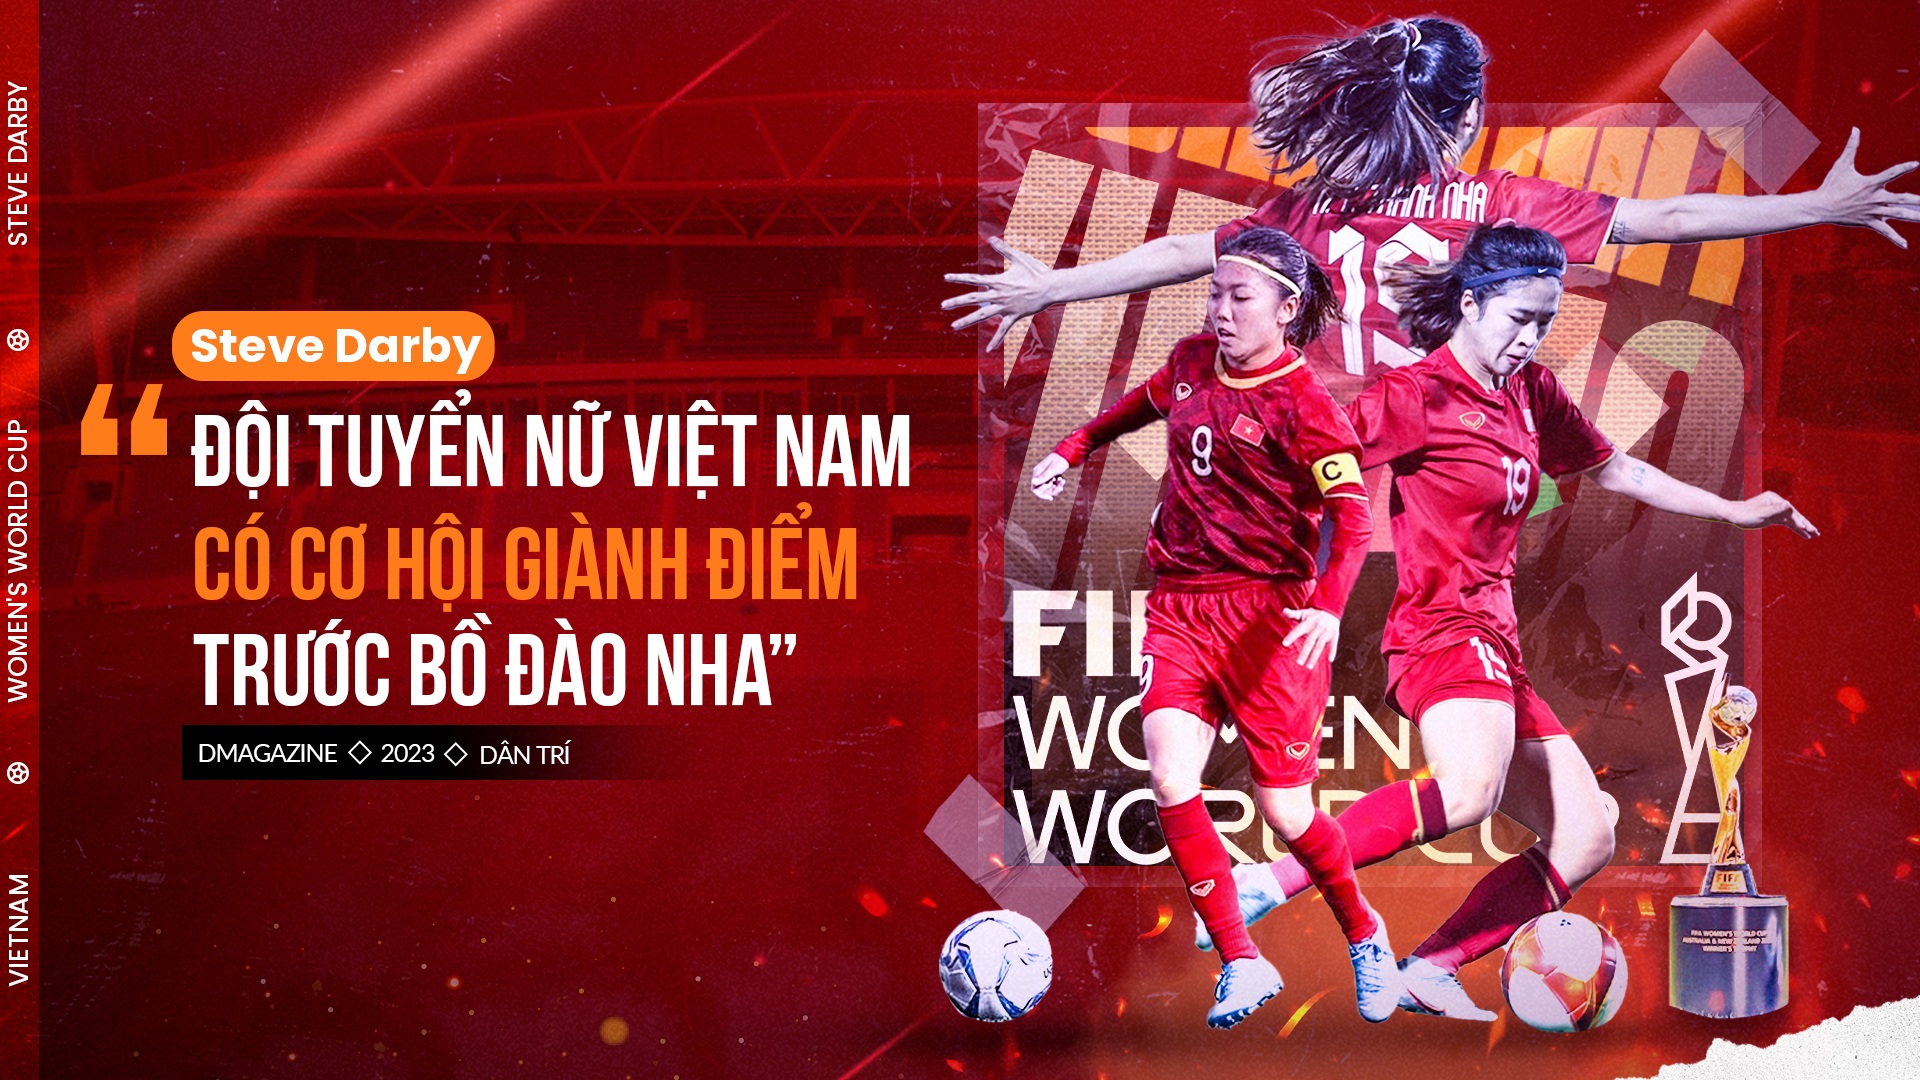 Steve Darby: "Đội tuyển nữ Việt Nam có cơ hội giành điểm trước Bồ Đào Nha"